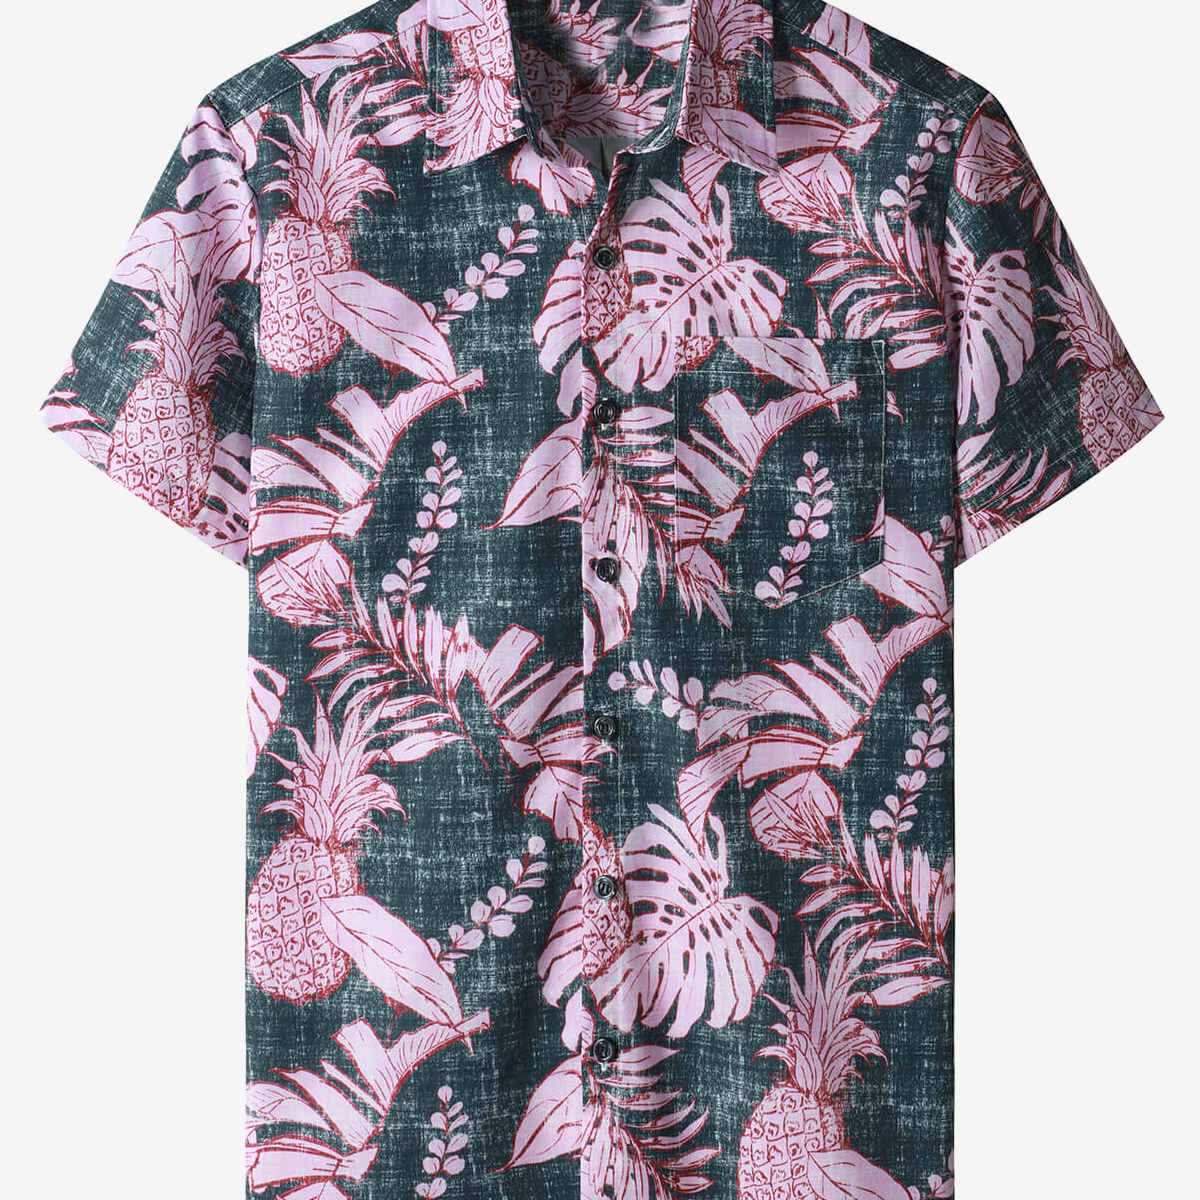 Camisa hawaiana de manga corta con bolsillo y estampado de piña tropical de verano para hombre